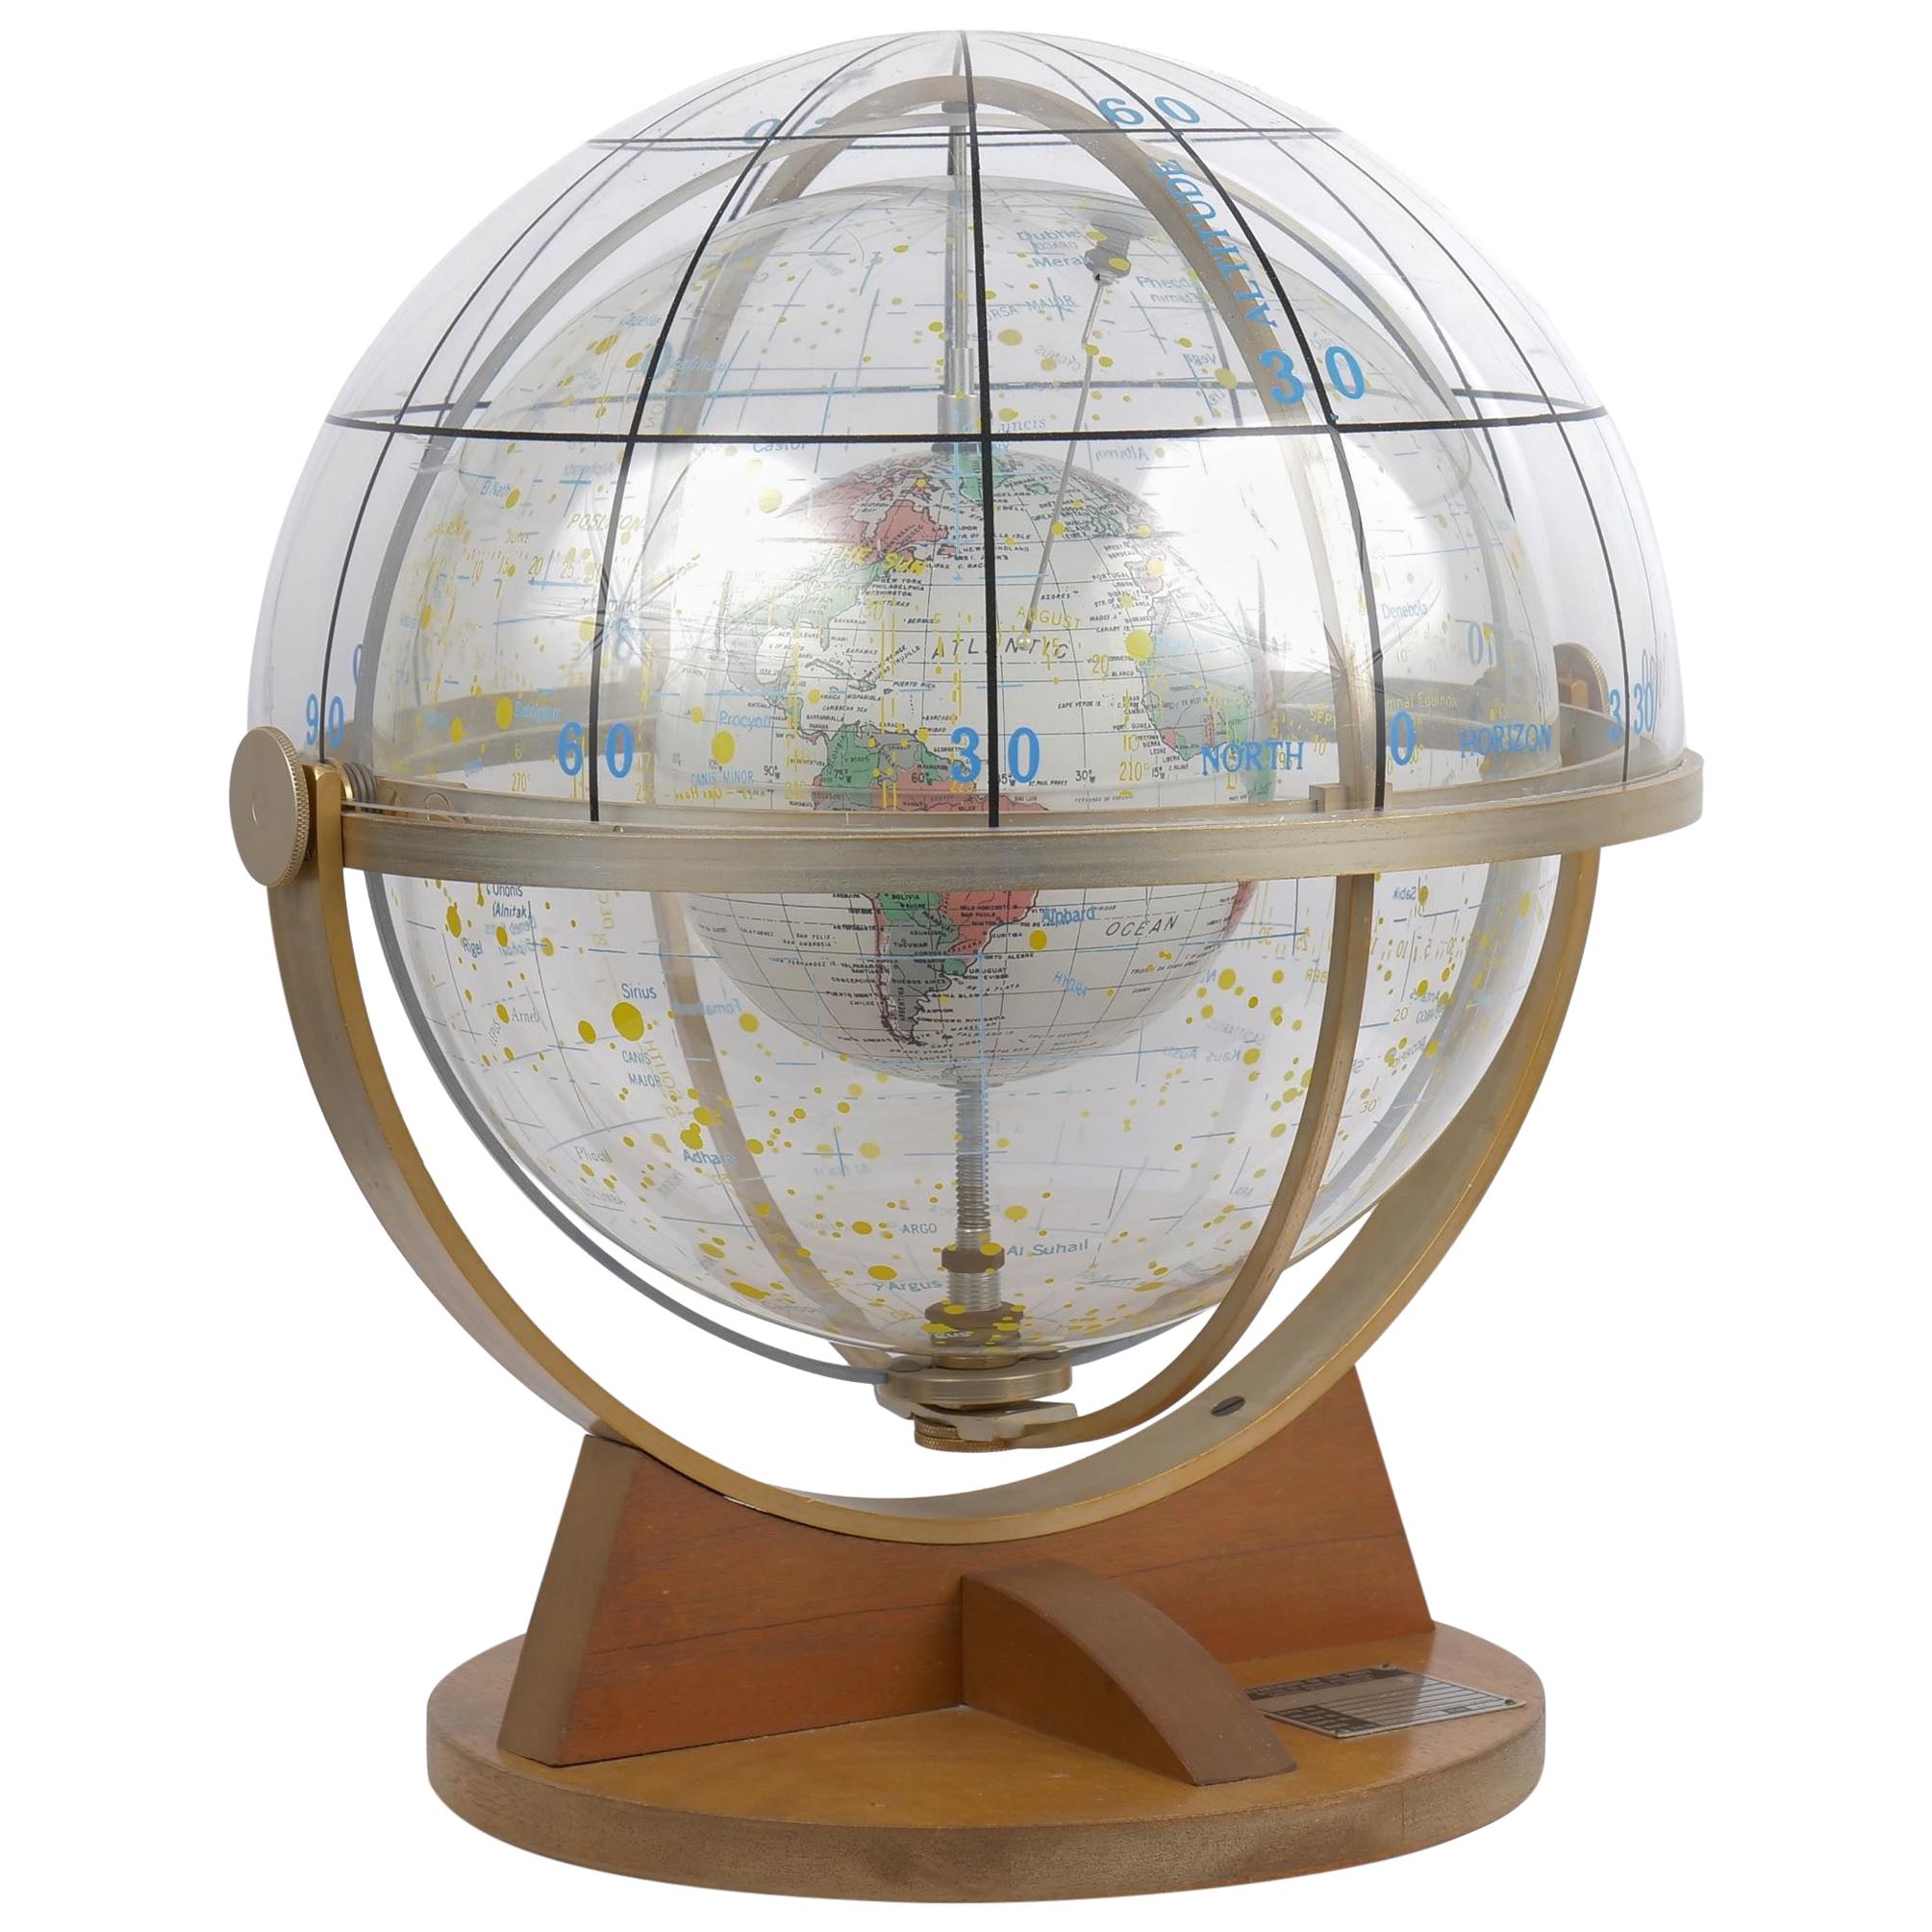 Farquhar Celestial Navigation Armillary Sphere Globe for Dept. of Navy